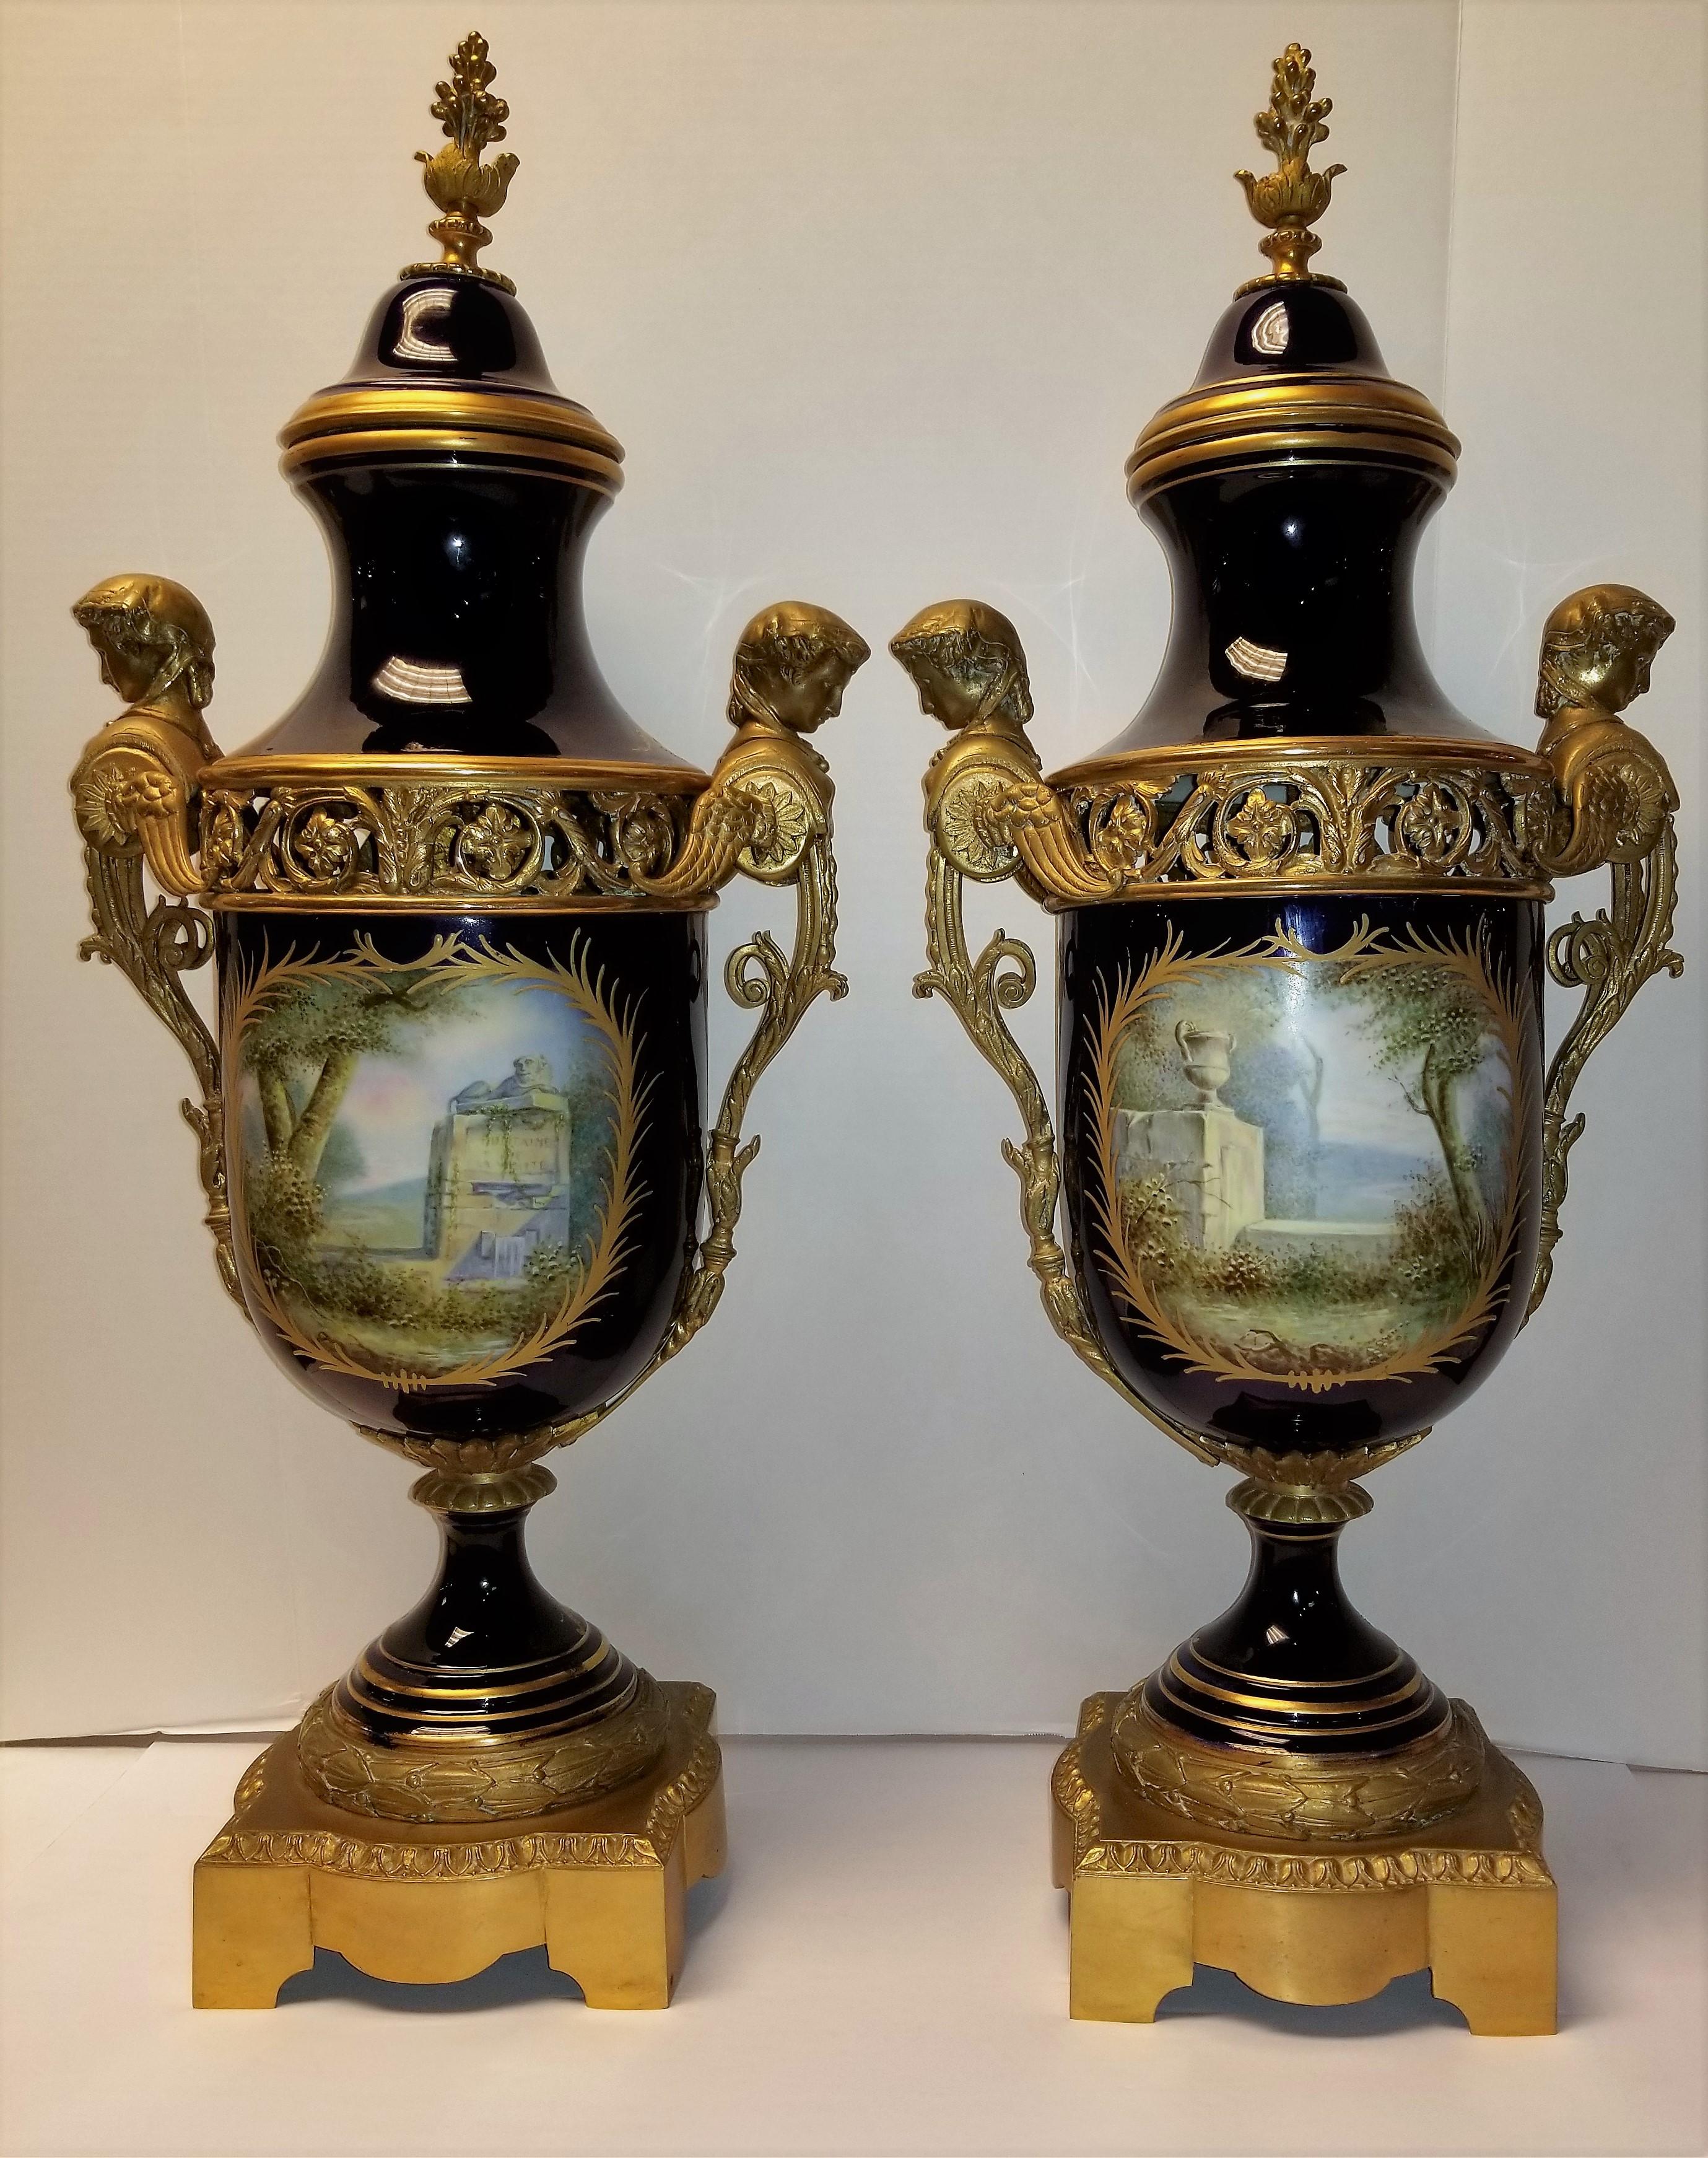 Une magnifique et grande paire de vases couverts en porcelaine royale de Sèvres bleu cobalt et montés sur bronze, datant du 19e siècle. Chaque panneau est magnifiquement peint à la main avec des scènes d'amour de Watteau, et orné de décorations en